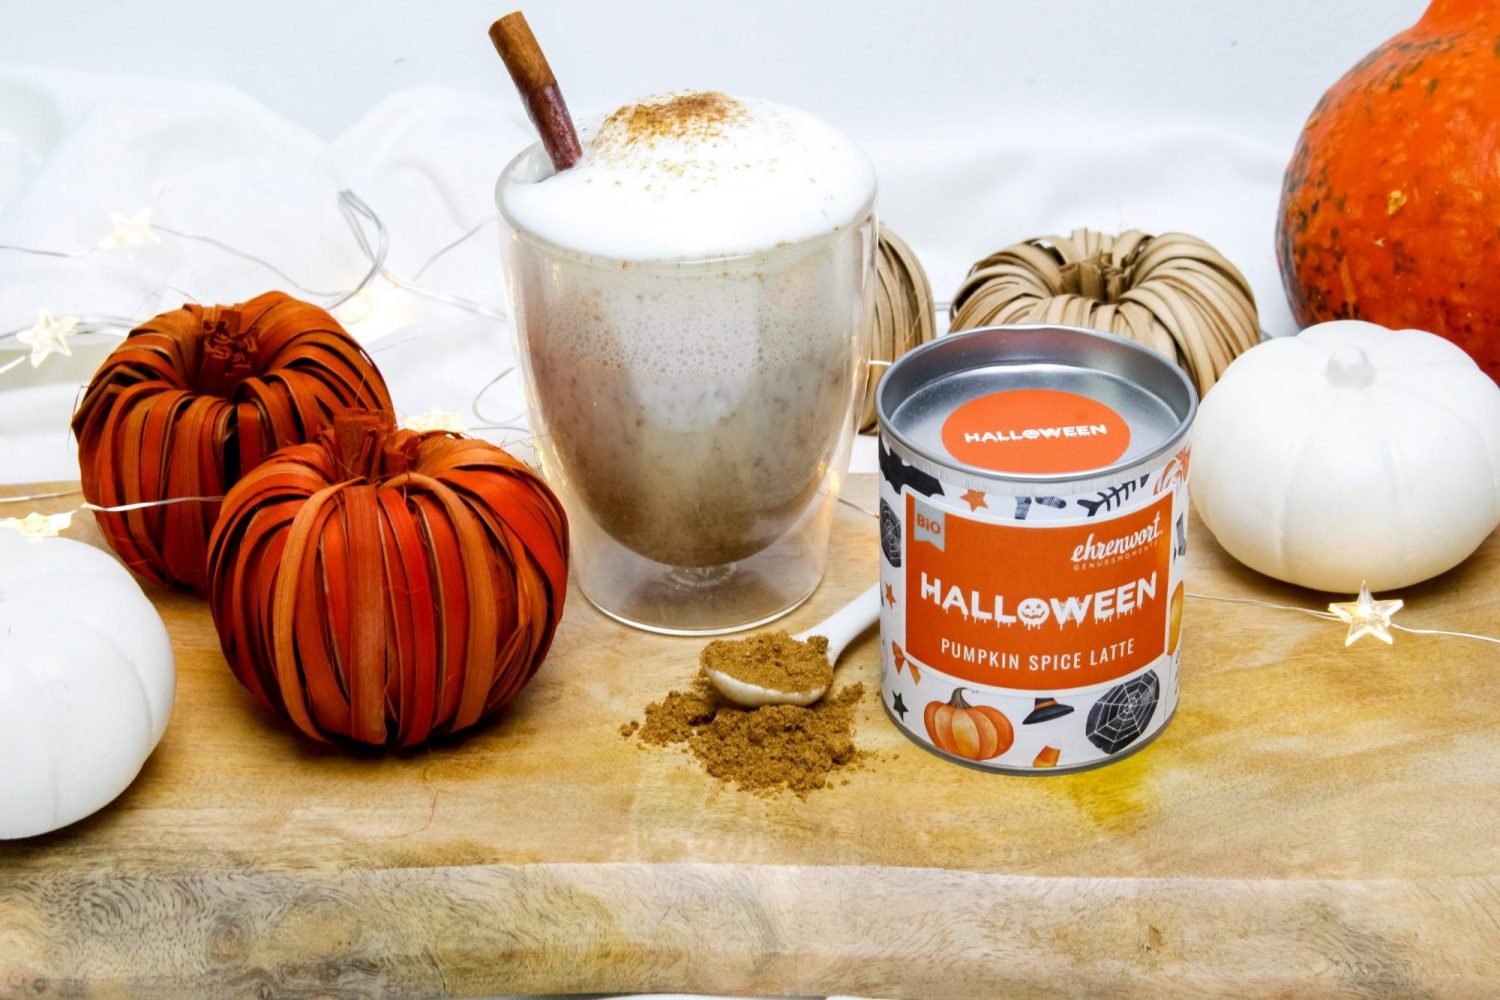 BIO Pumpkin Spice Latte Gewürz - jetzt neu im exklusiven Halloween Design